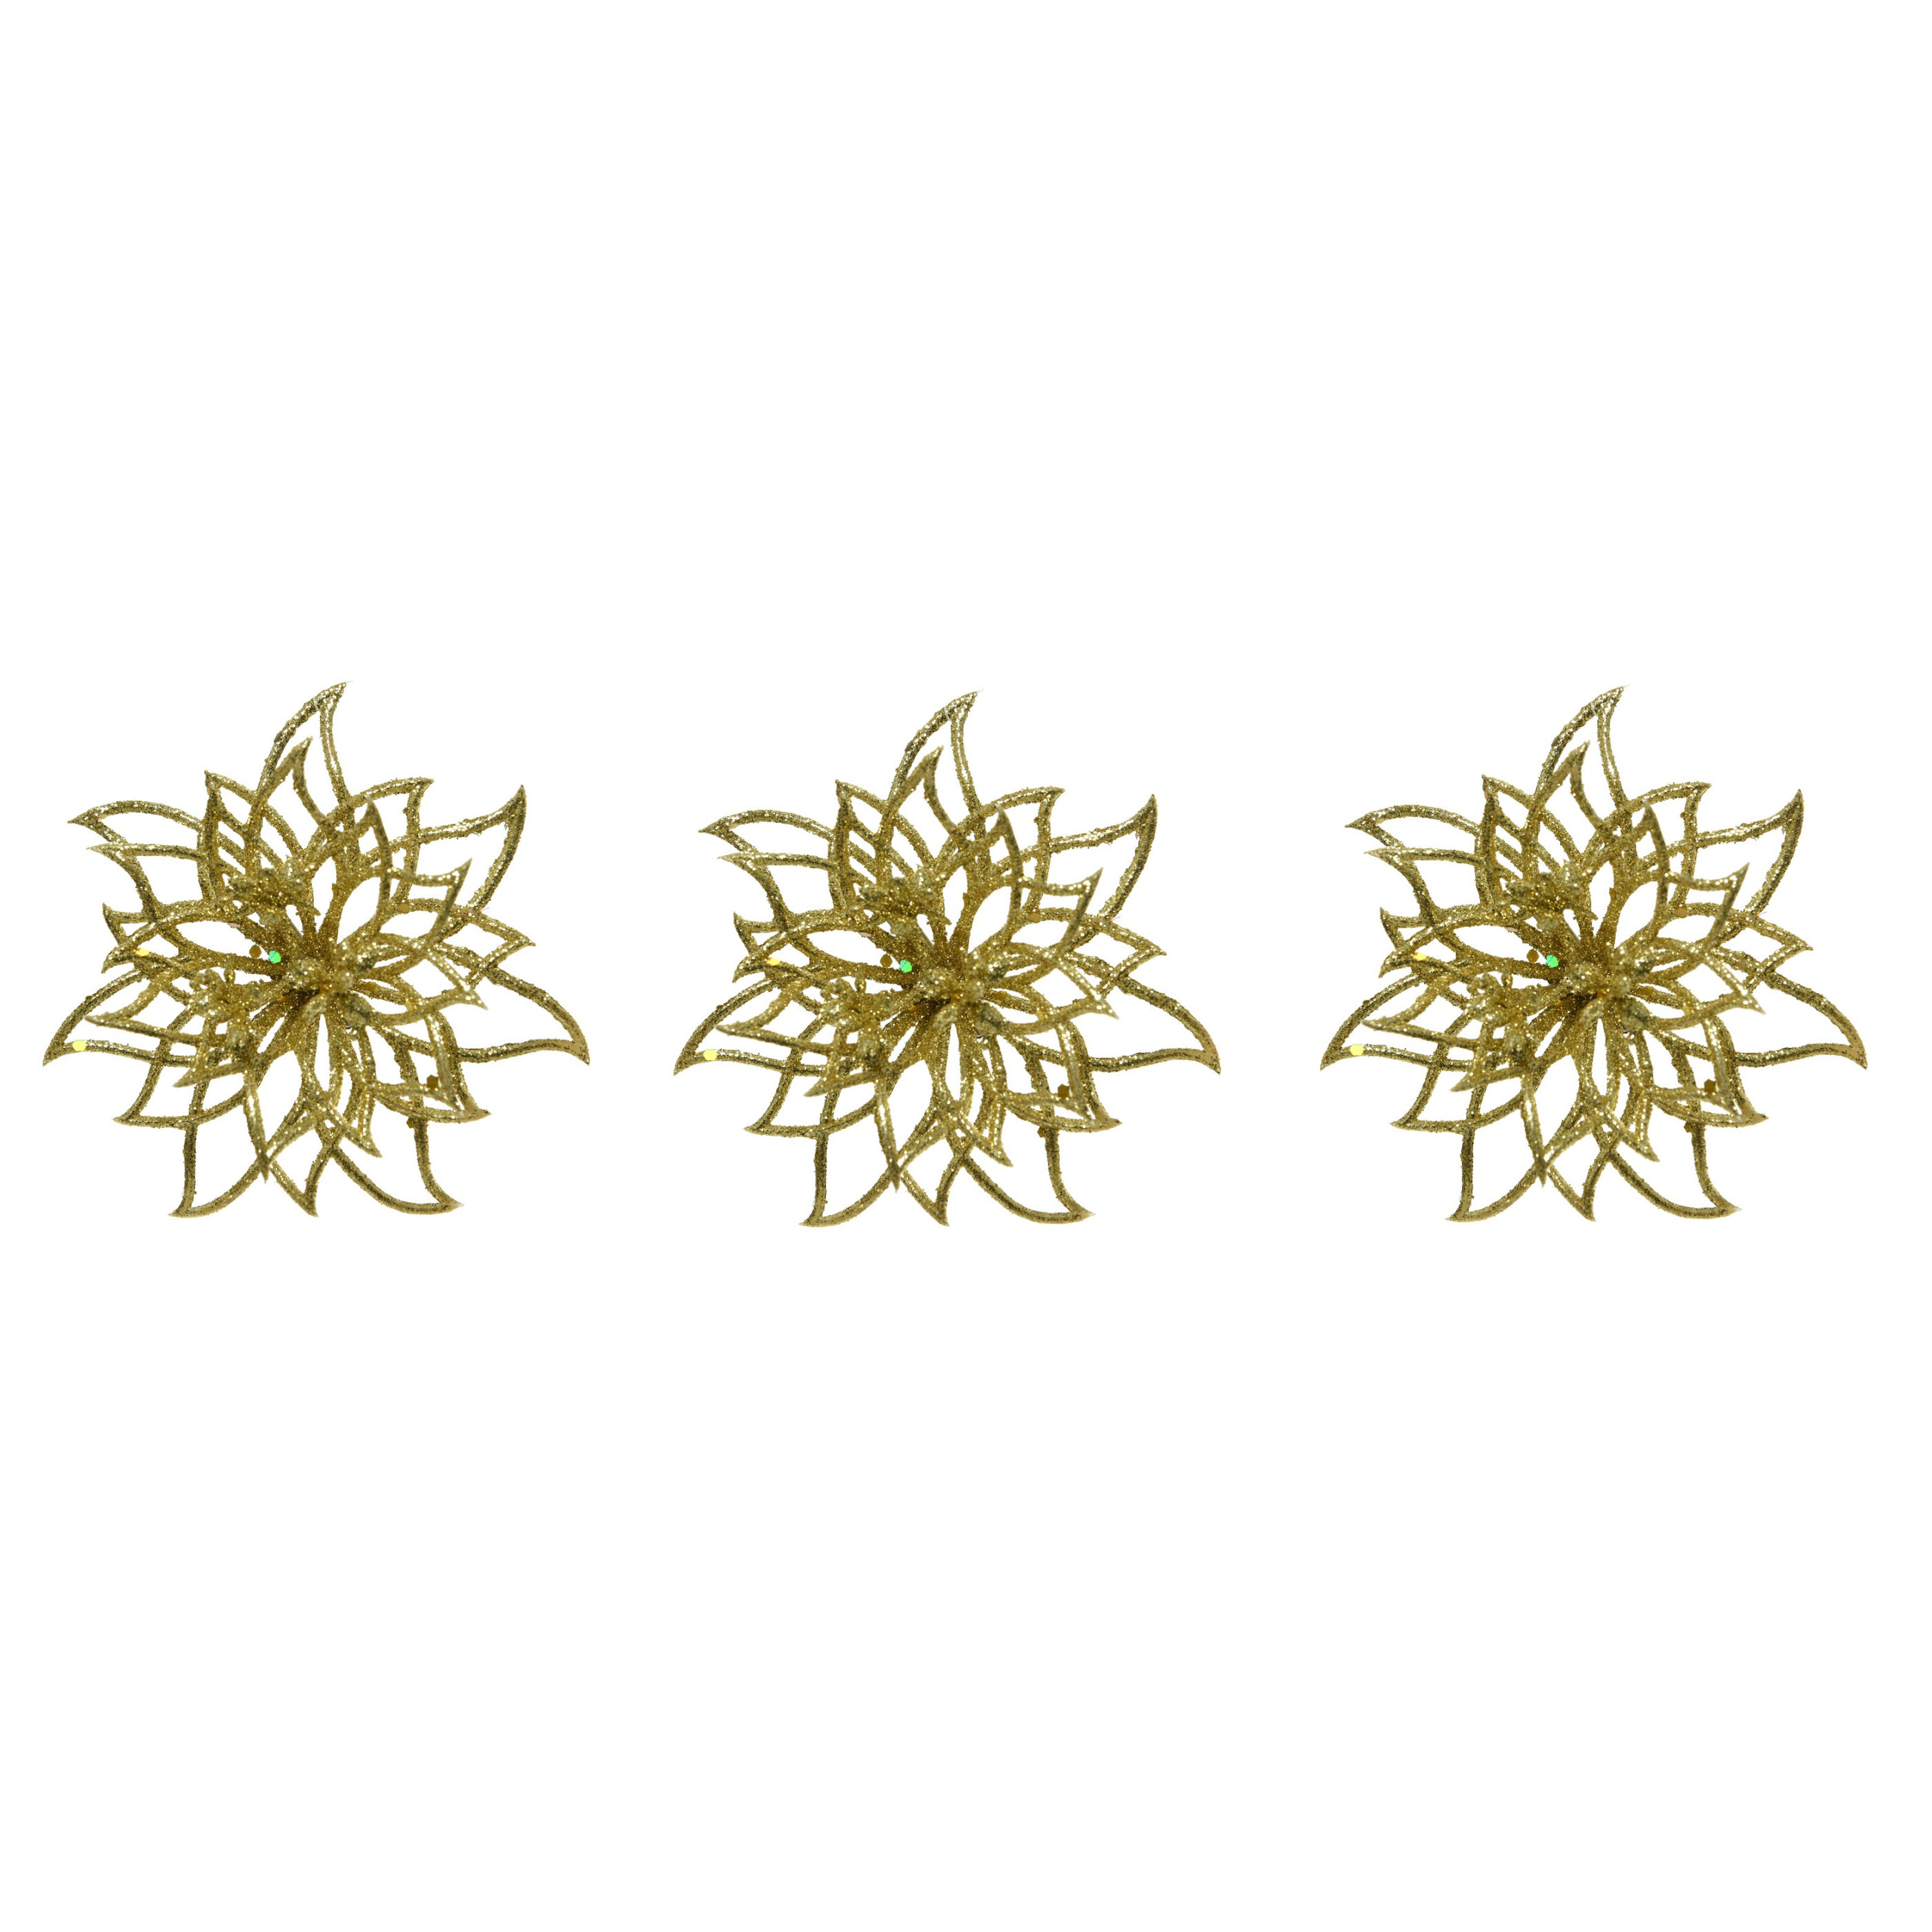 6x stuks decoratie bloemen kerstster goud glitter op clip 14 cm